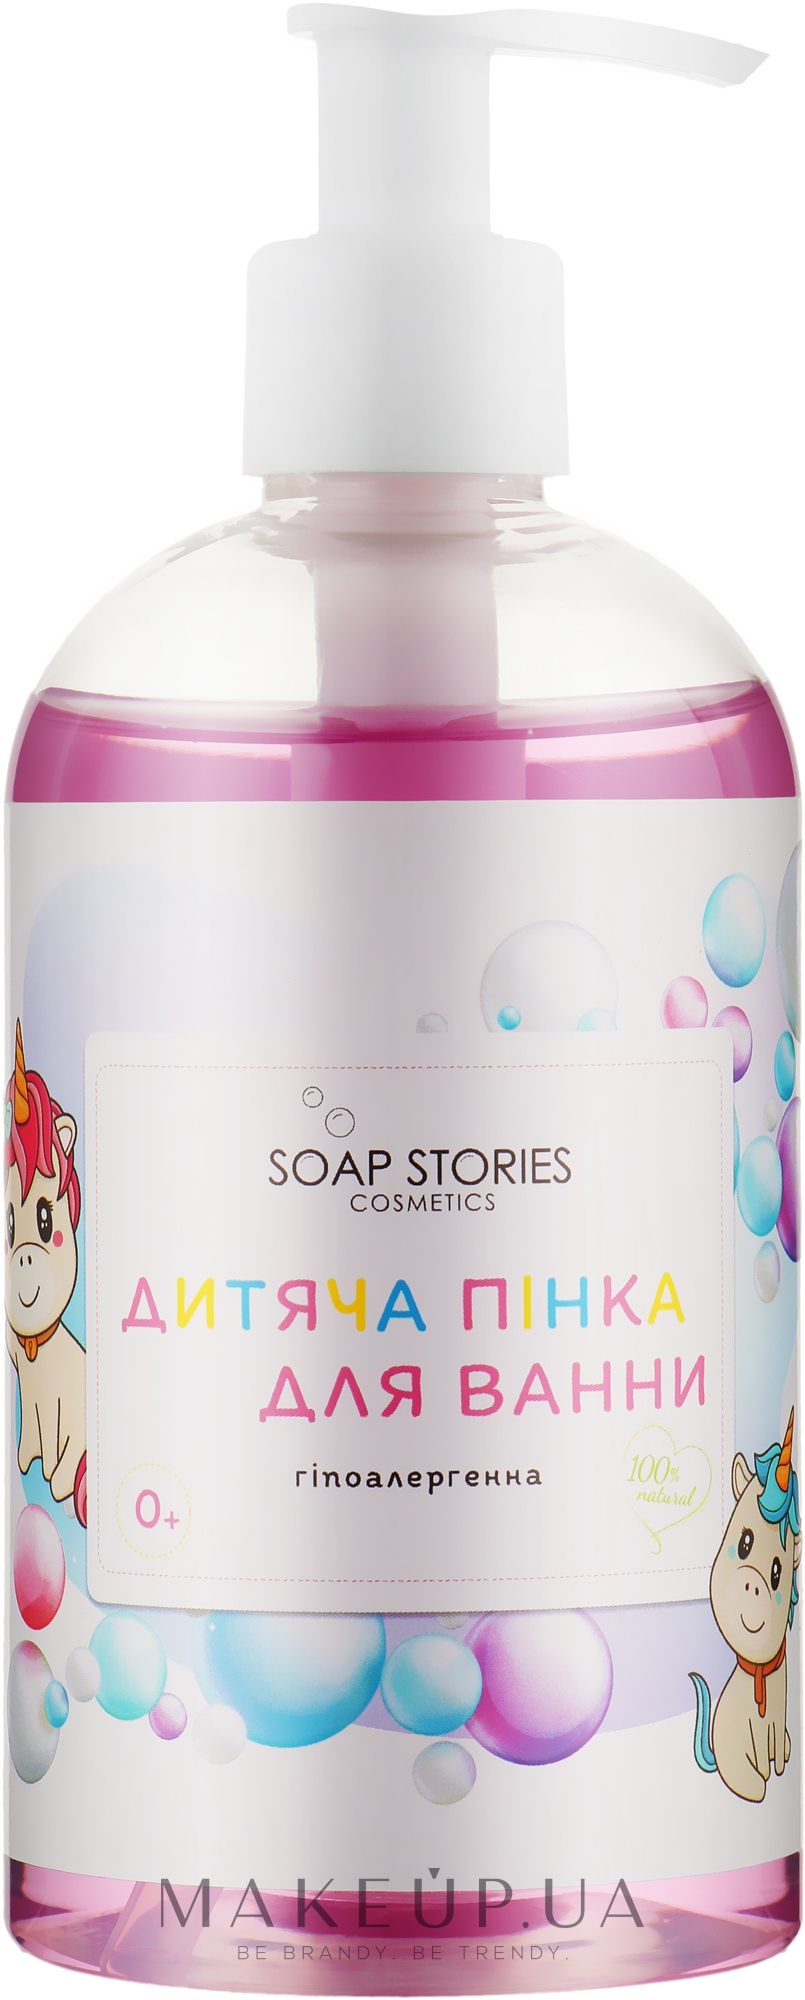 Натуральная гипоаллергенная детская пенка для ванны - Soap Stories — фото 350g